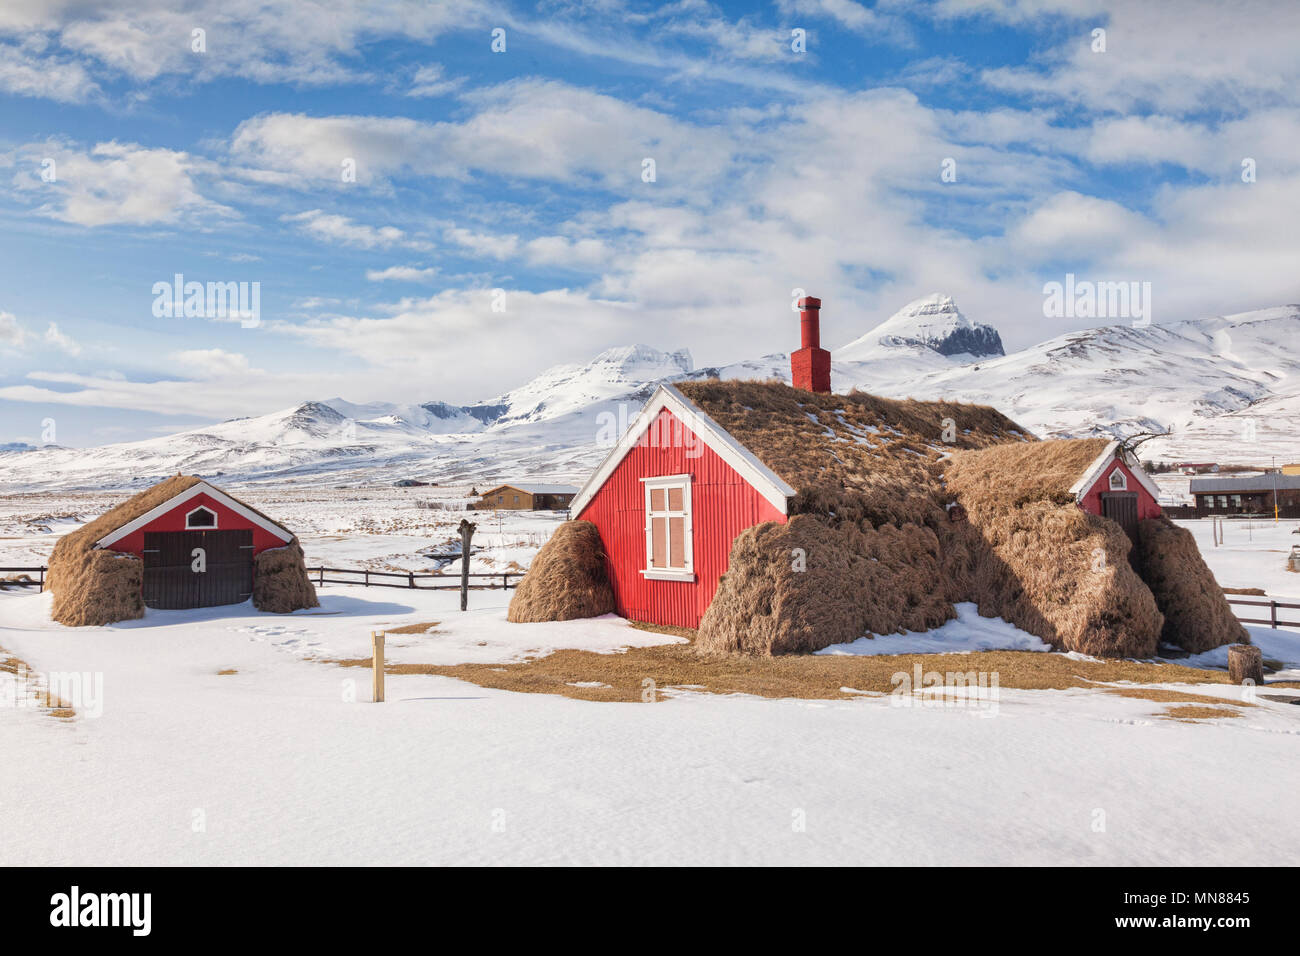 10 avril 2018 : l'Islande du Nord - Maison Lindarbakki gazon dans le village de Bakkageroi Borgarfjordur, estri, Nord de l'Islande. Une très vieille maison de tu Banque D'Images